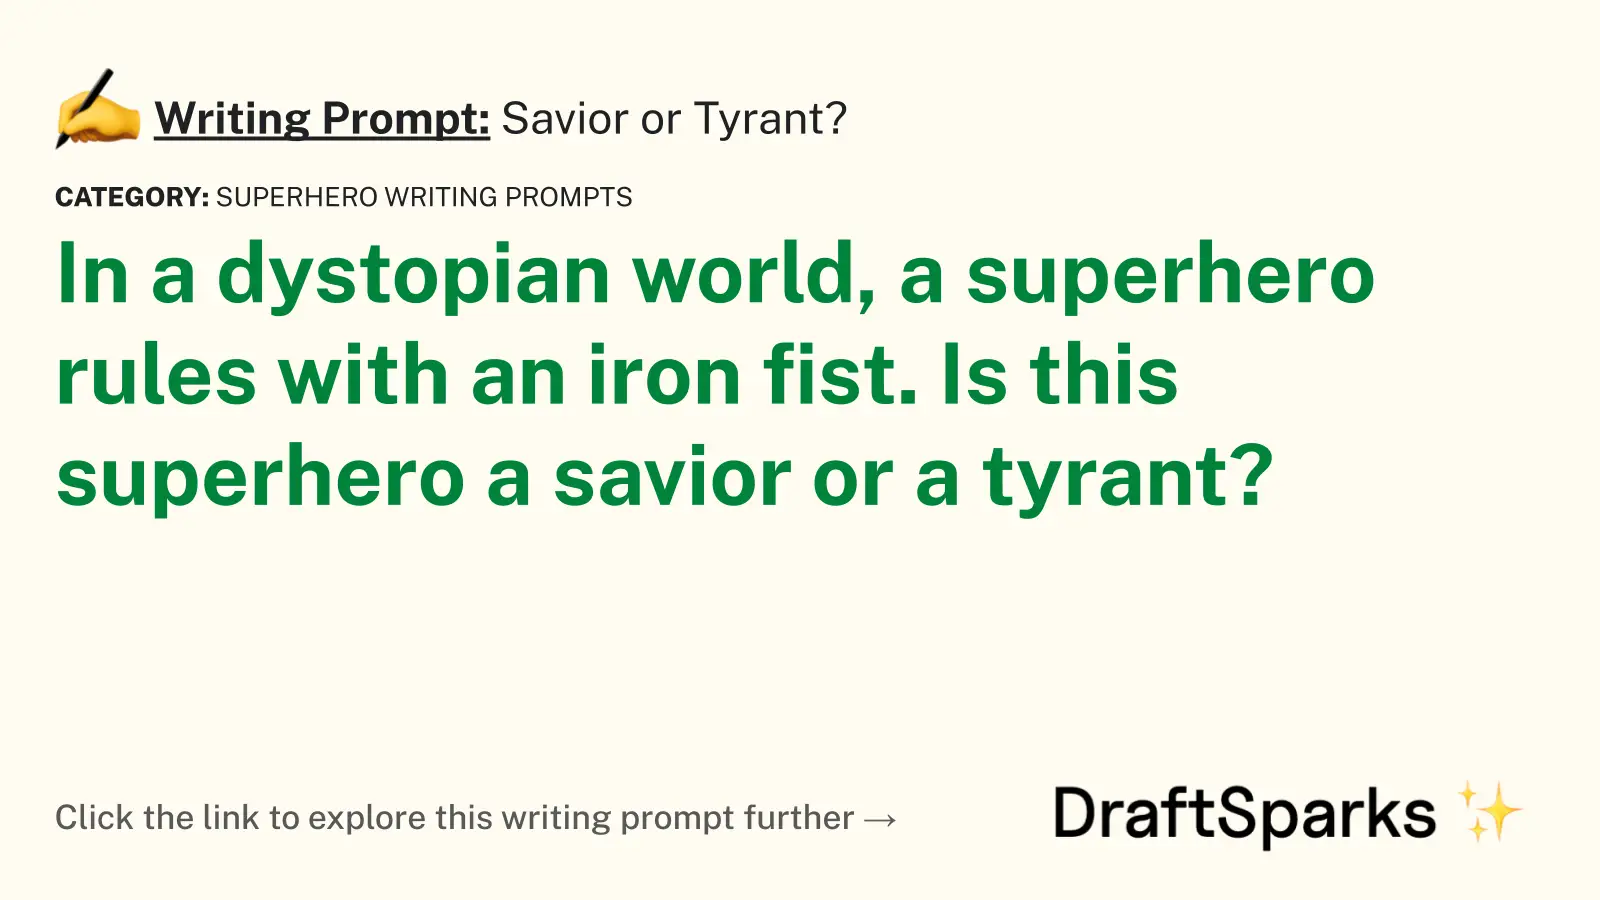 Savior or Tyrant?